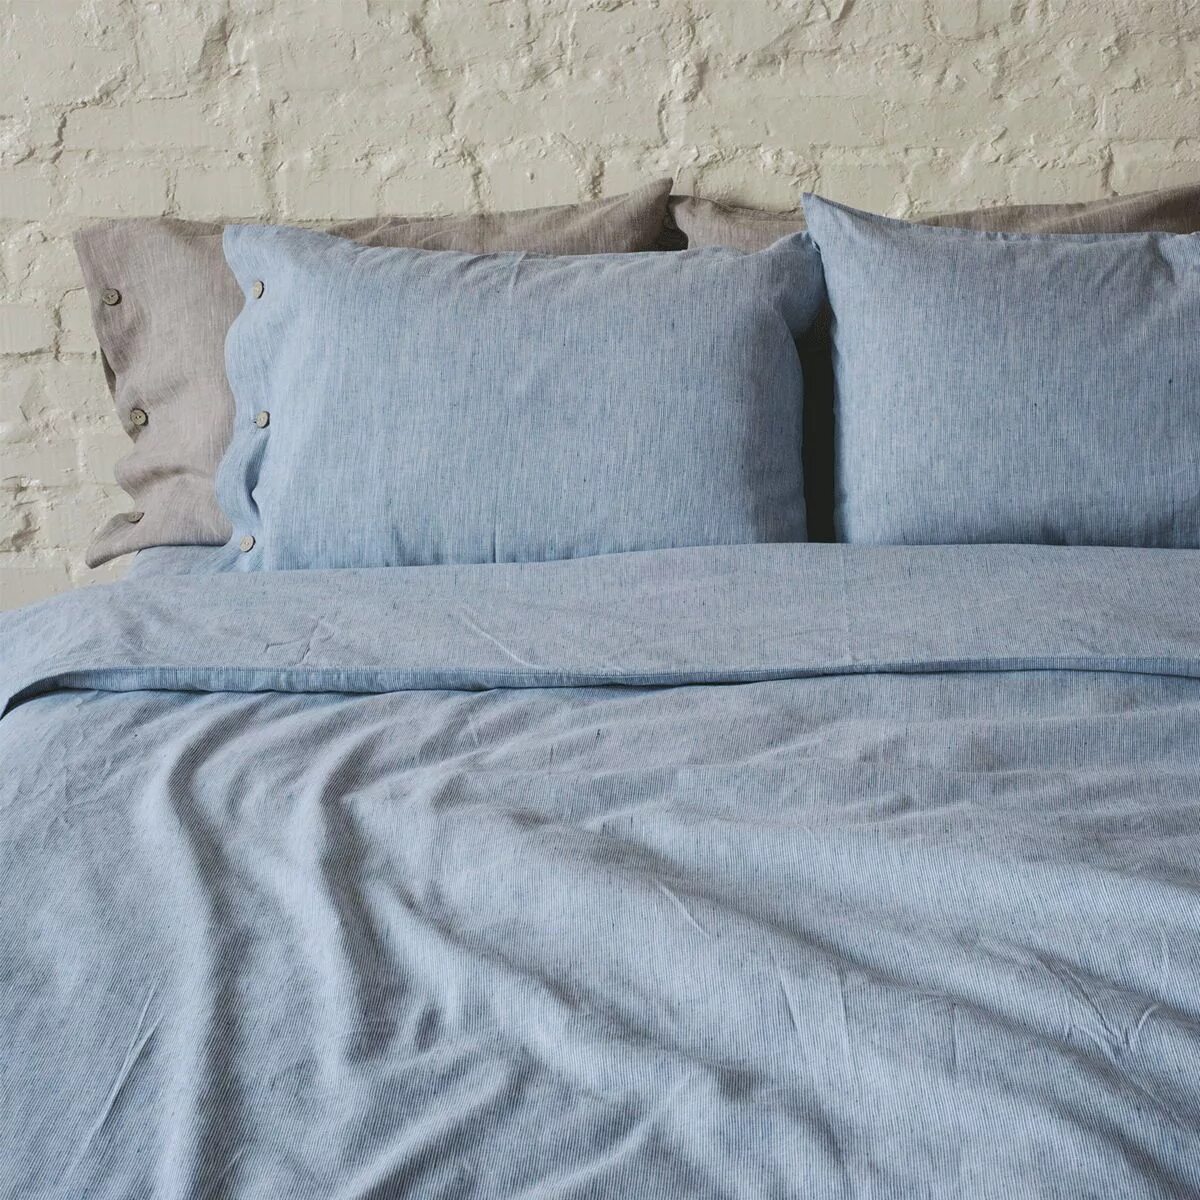 Купить льняное постельное. Умягченный лен постельное белье. Комплект постельного белья лен 100% умягченный. Льняное постельное белье. Голубое льняное белье постельное.